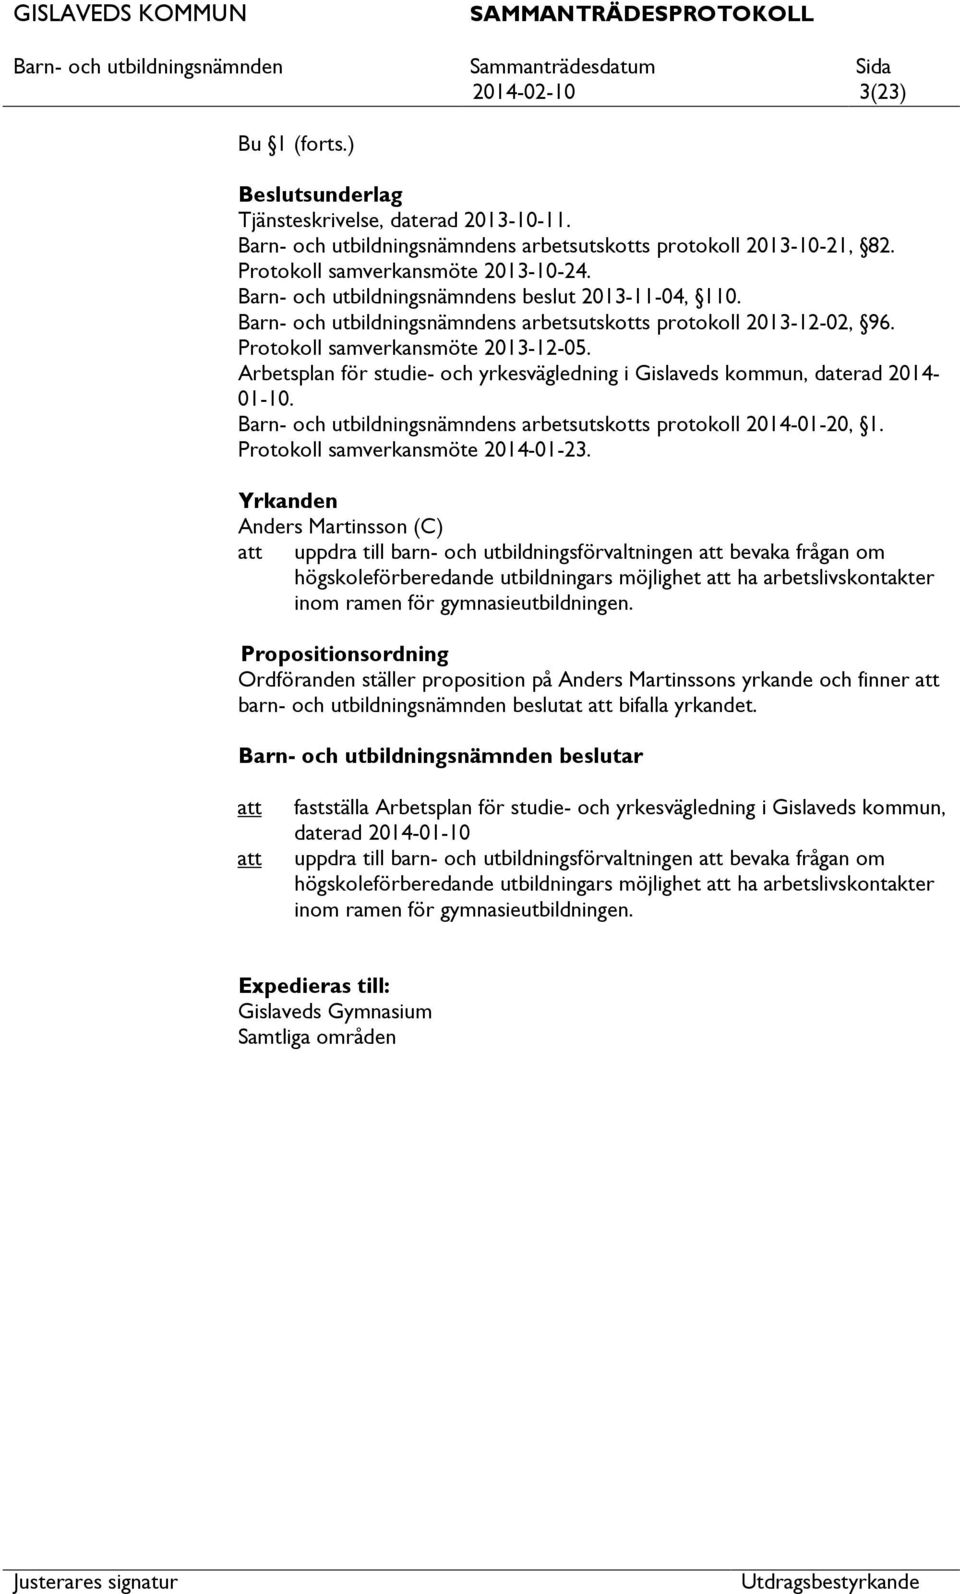 Arbetsplan för studie- och yrkesvägledning i Gislaveds kommun, daterad 2014-01-10. Barn- och utbildningsnämndens arbetsutskotts protokoll 2014-01-20, 1. Protokoll samverkansmöte 2014-01-23.